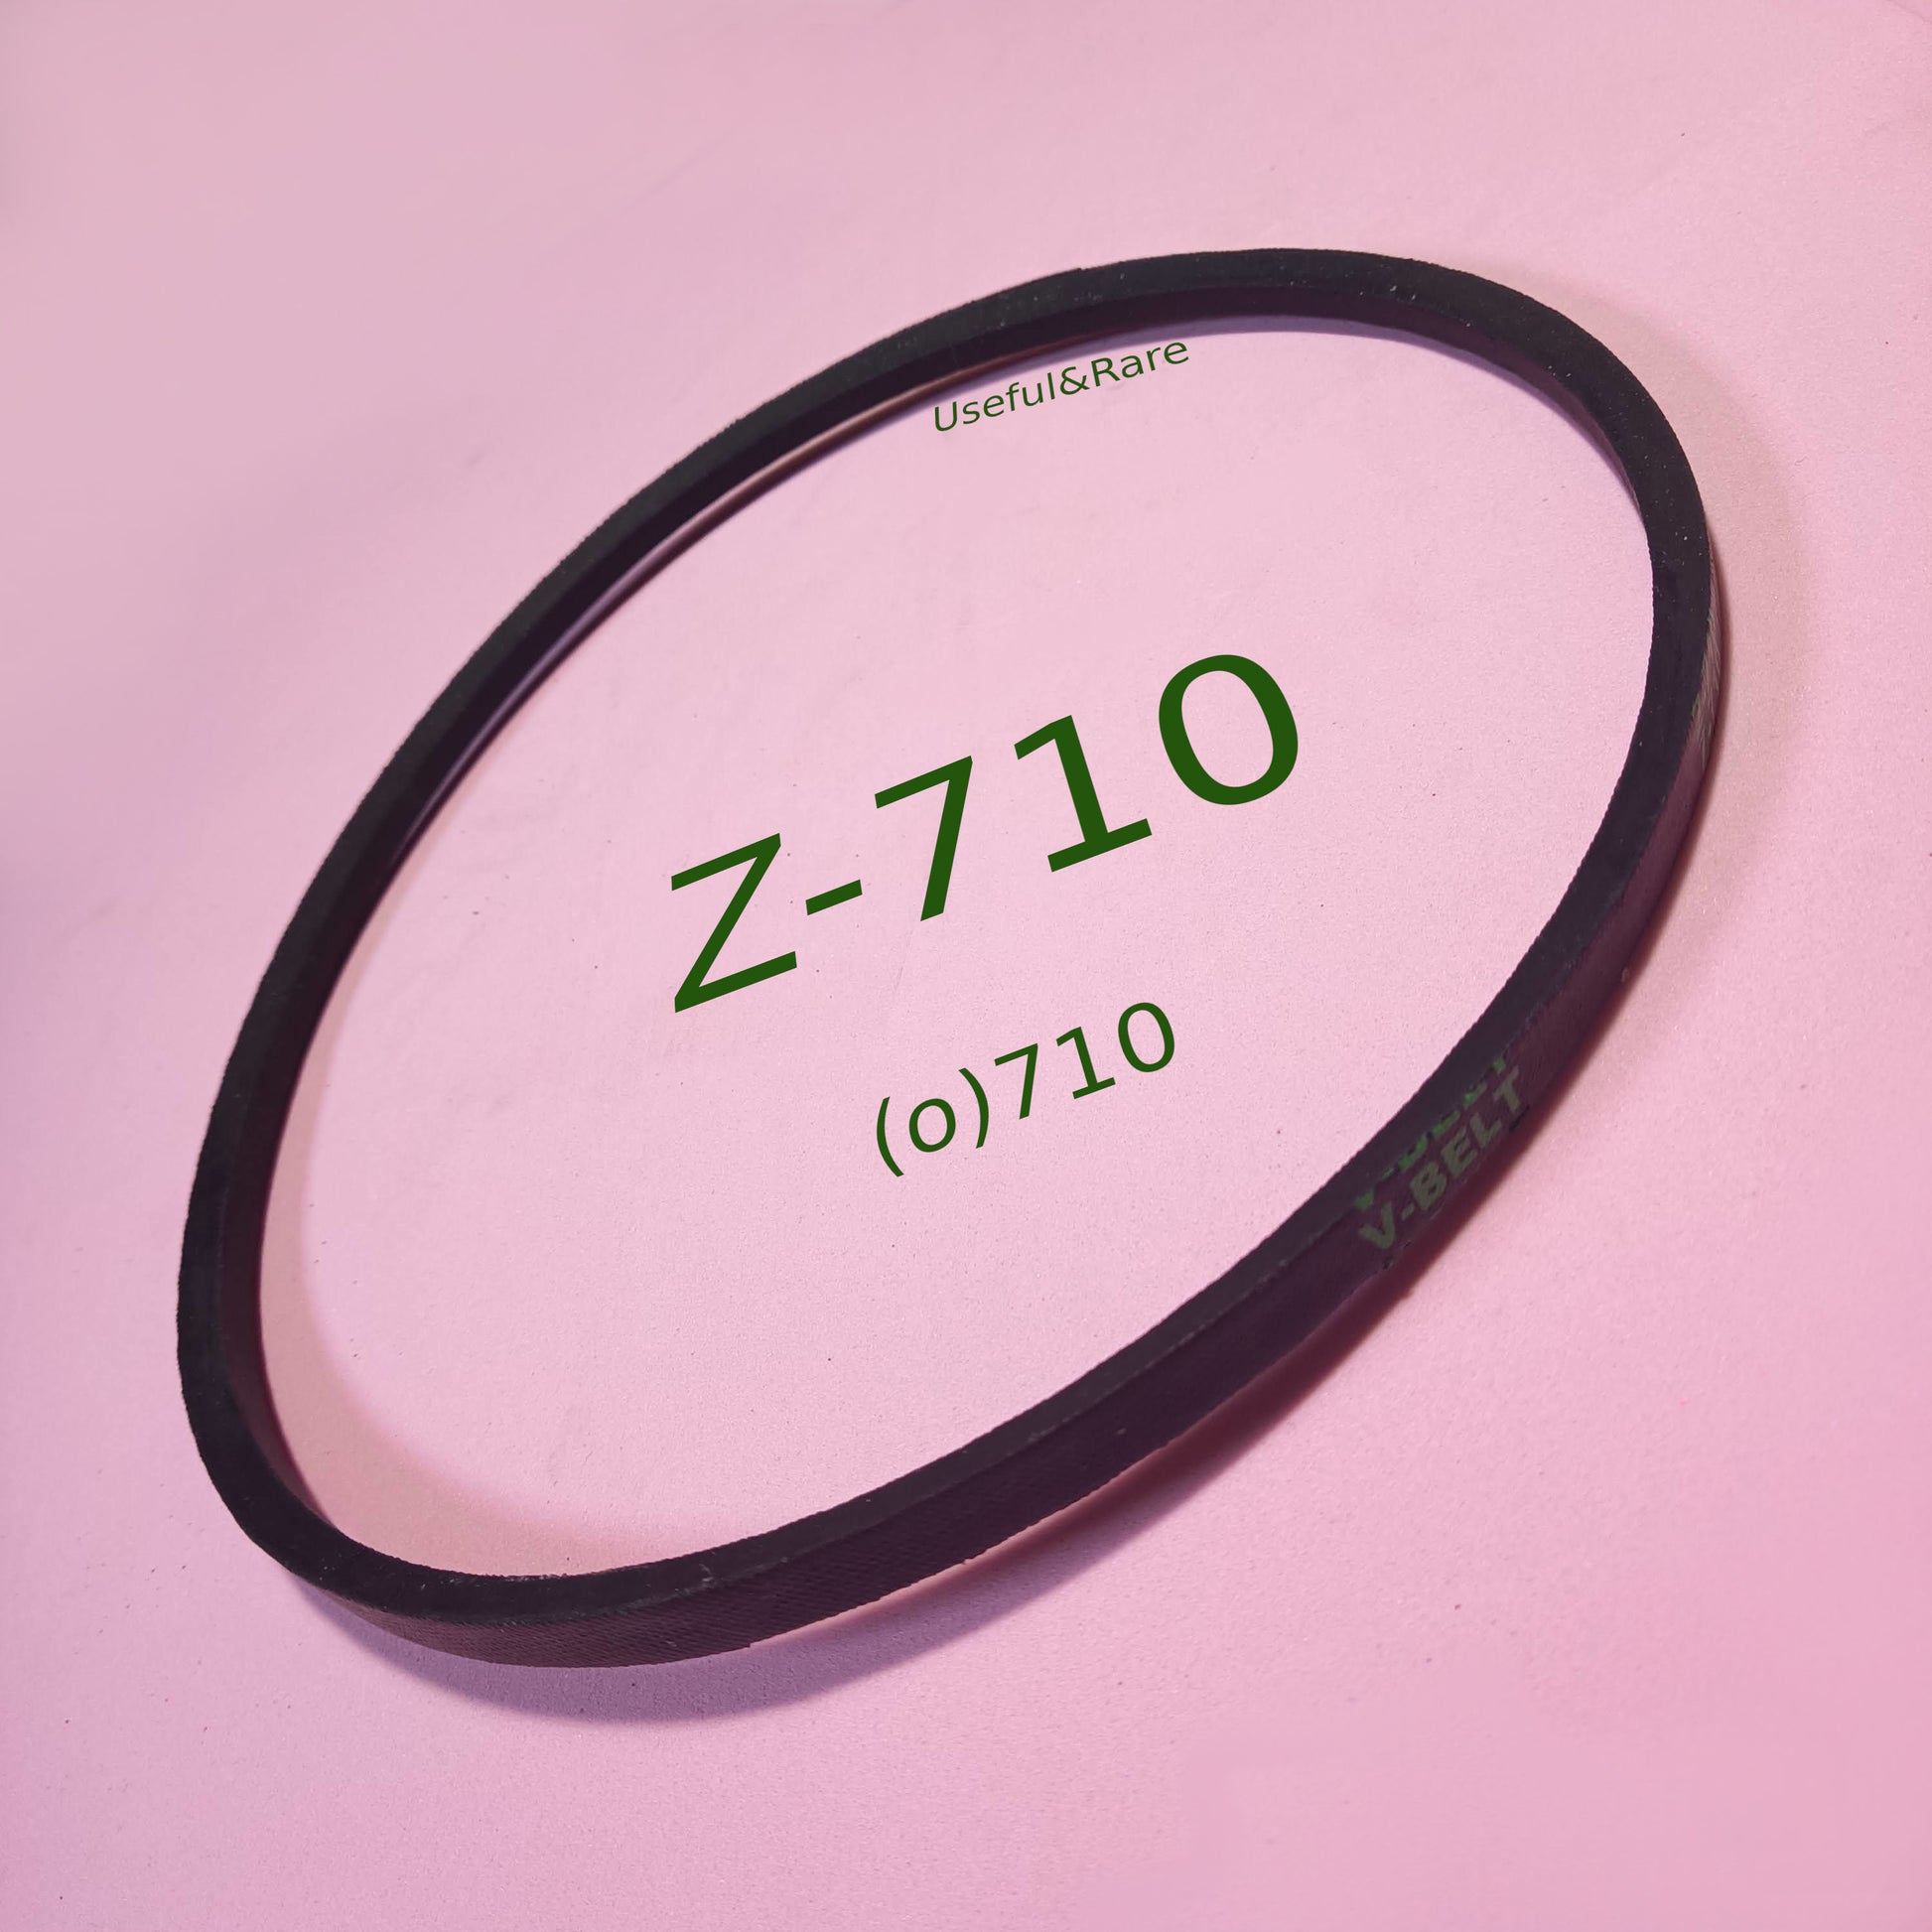 Z-710 L710